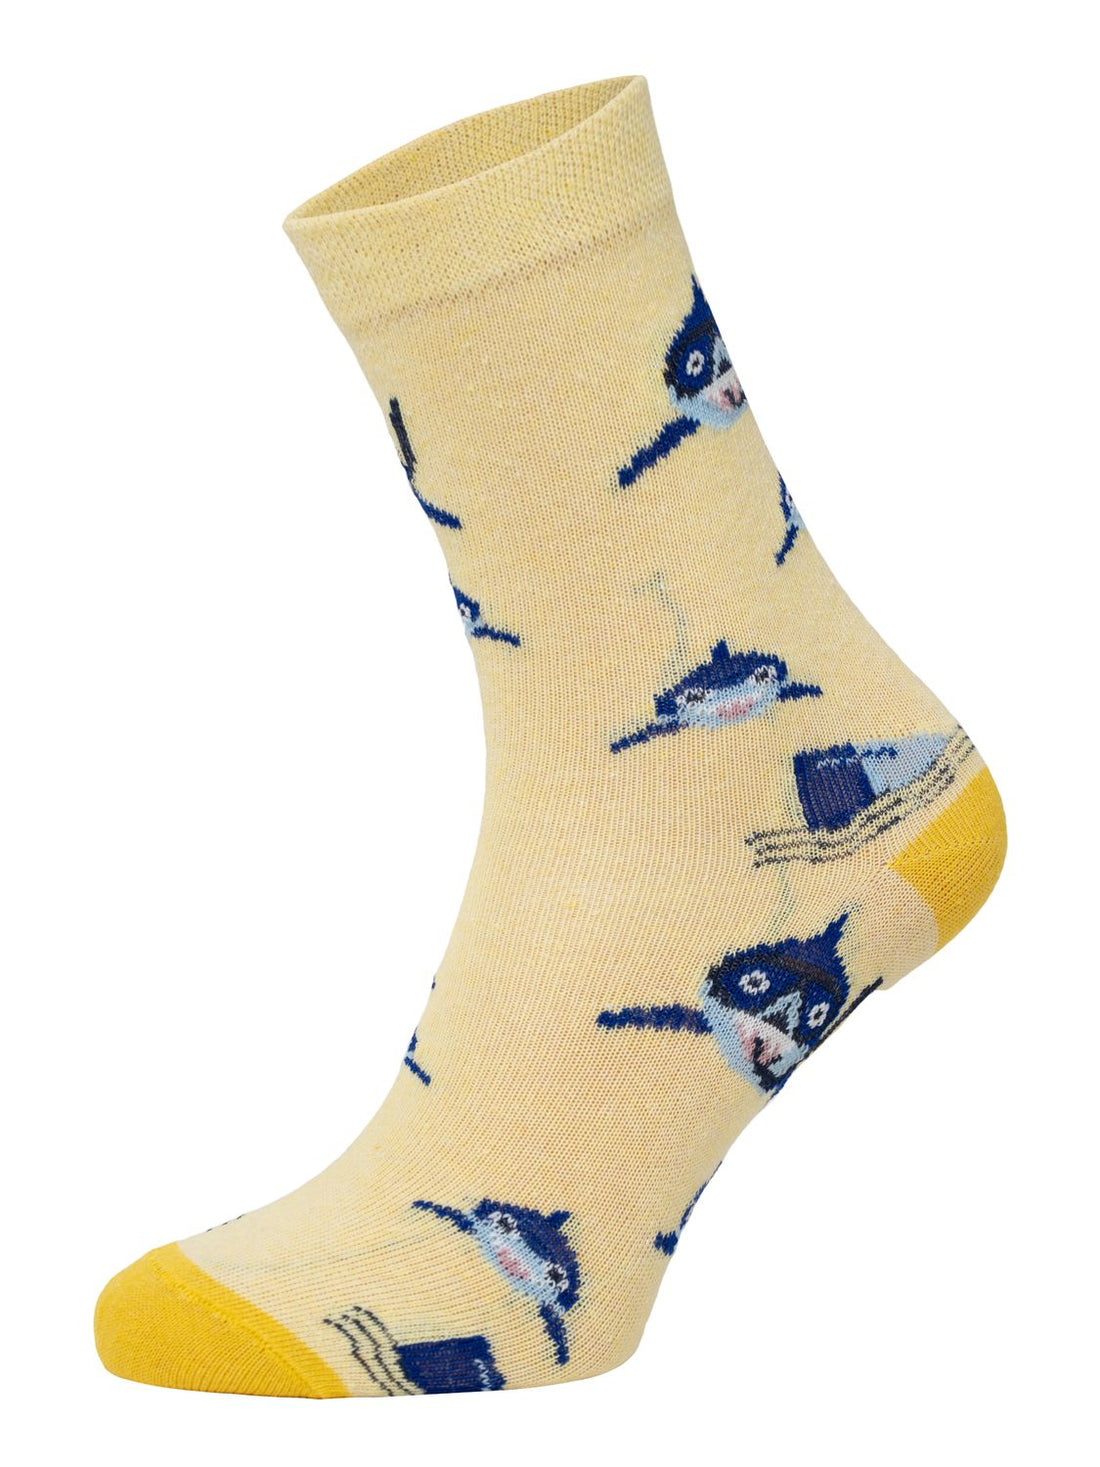 ChiliLifestyle Socken Hai für Kinder